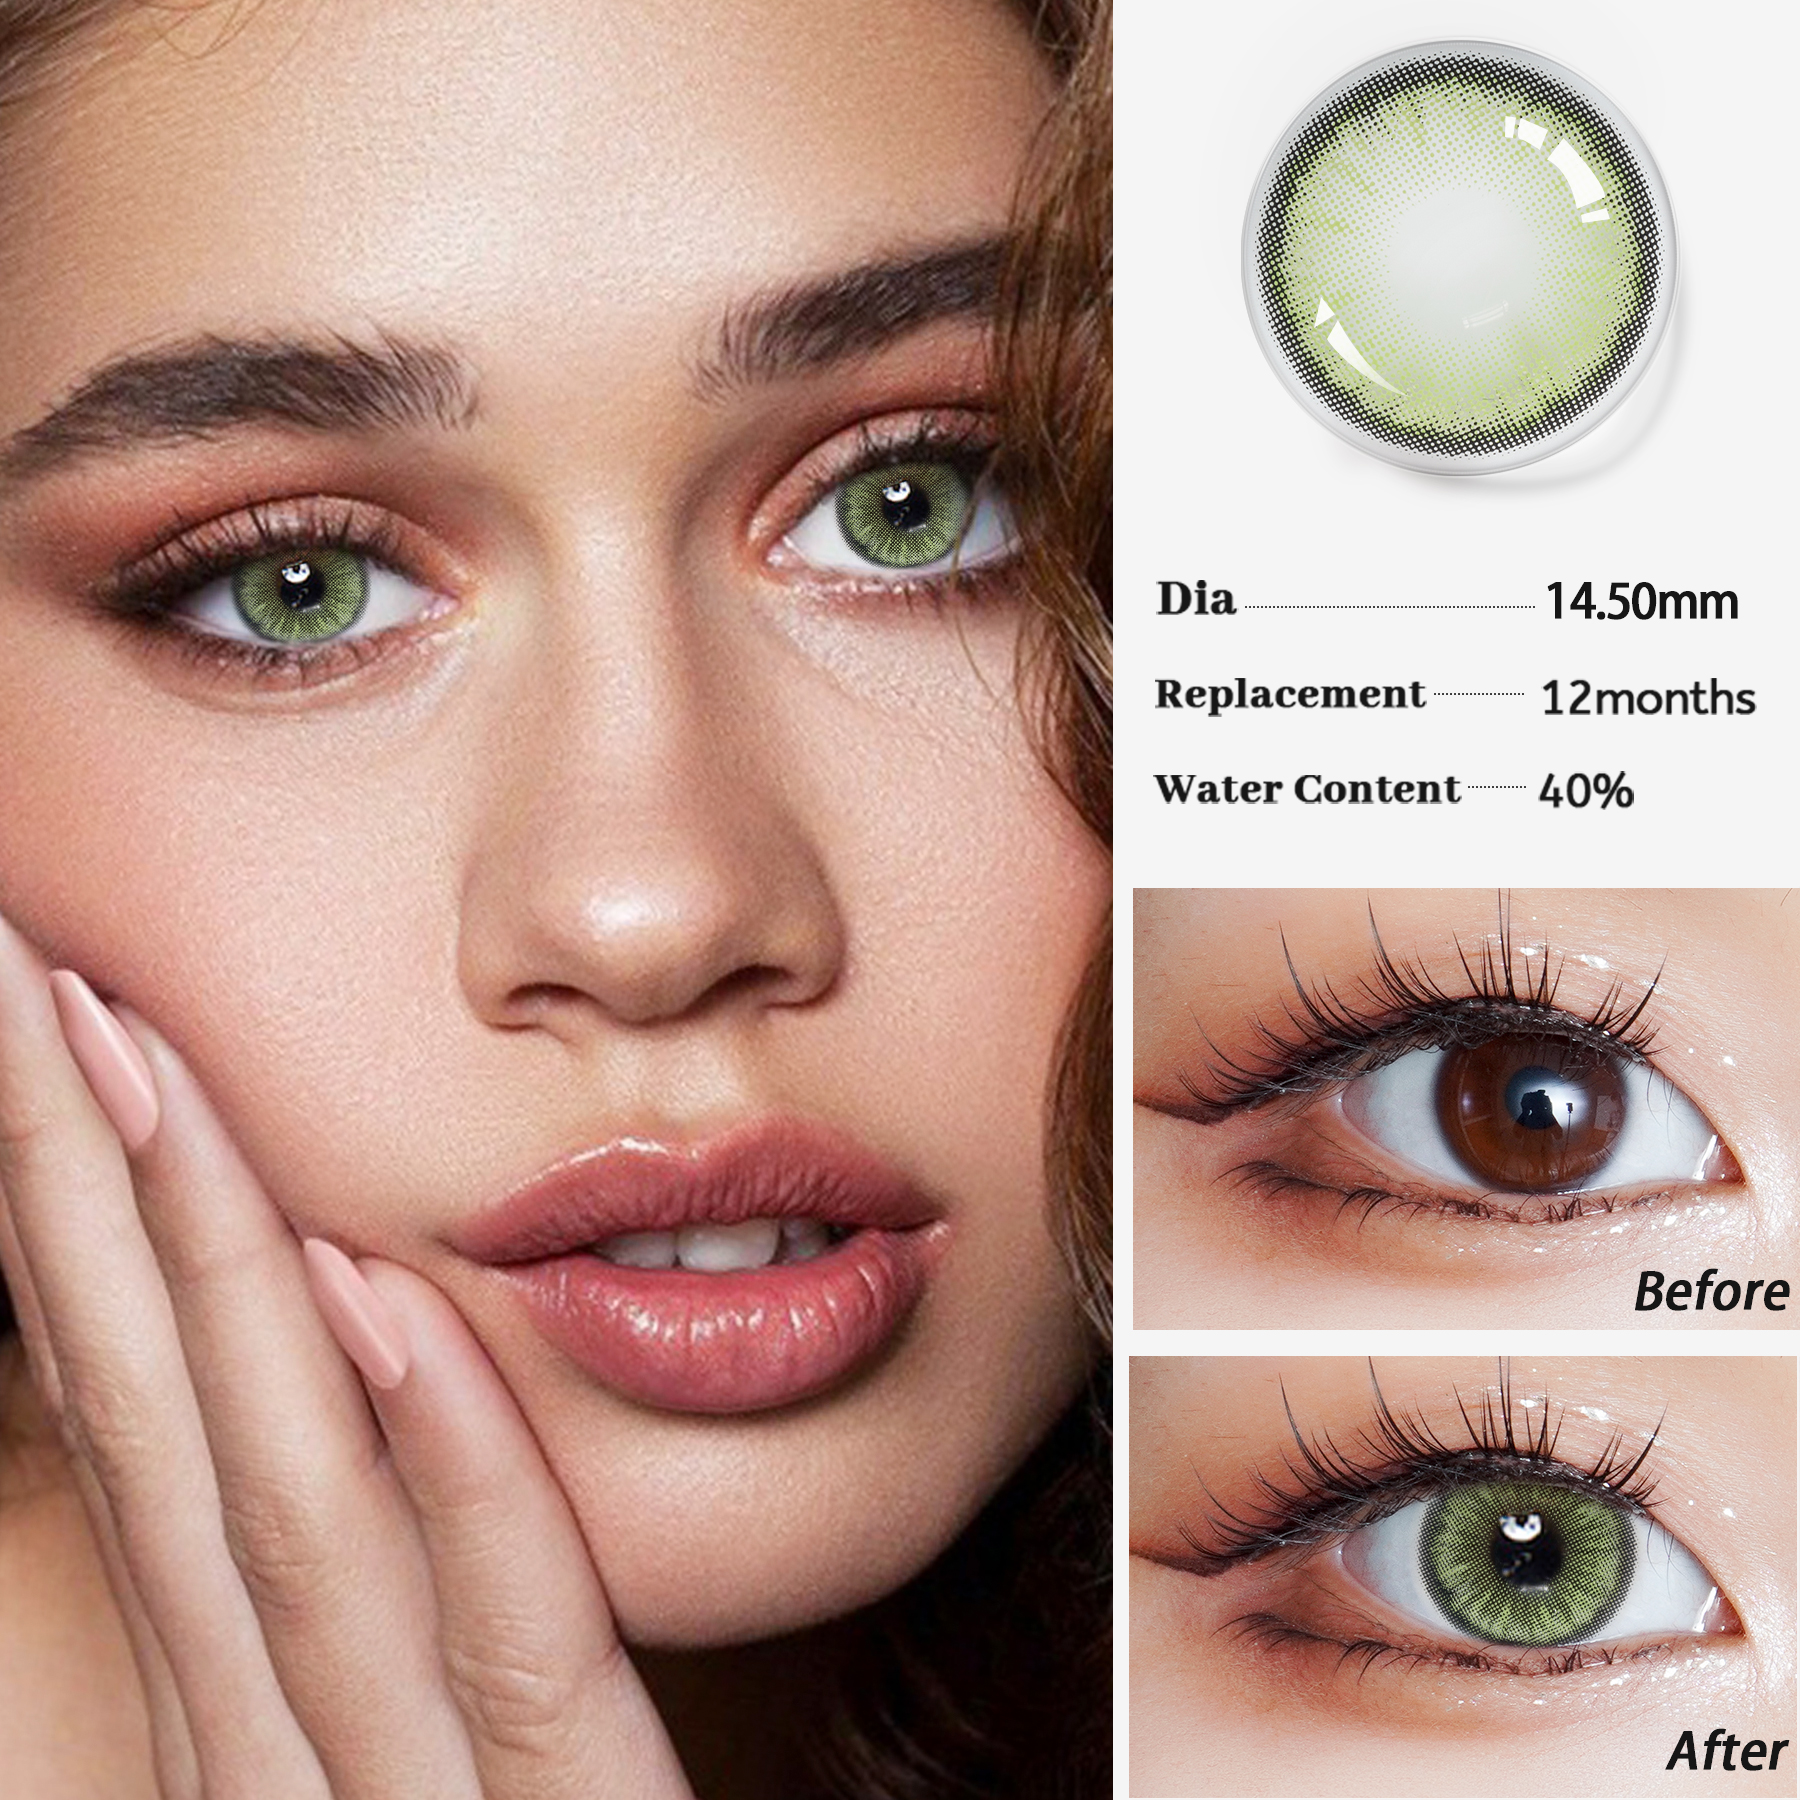 DAWN HOT sêfte brillen kosmetika foar eagenkleur kontaktlenzen jierlikse natuerlike kleurde kontaktlenzen